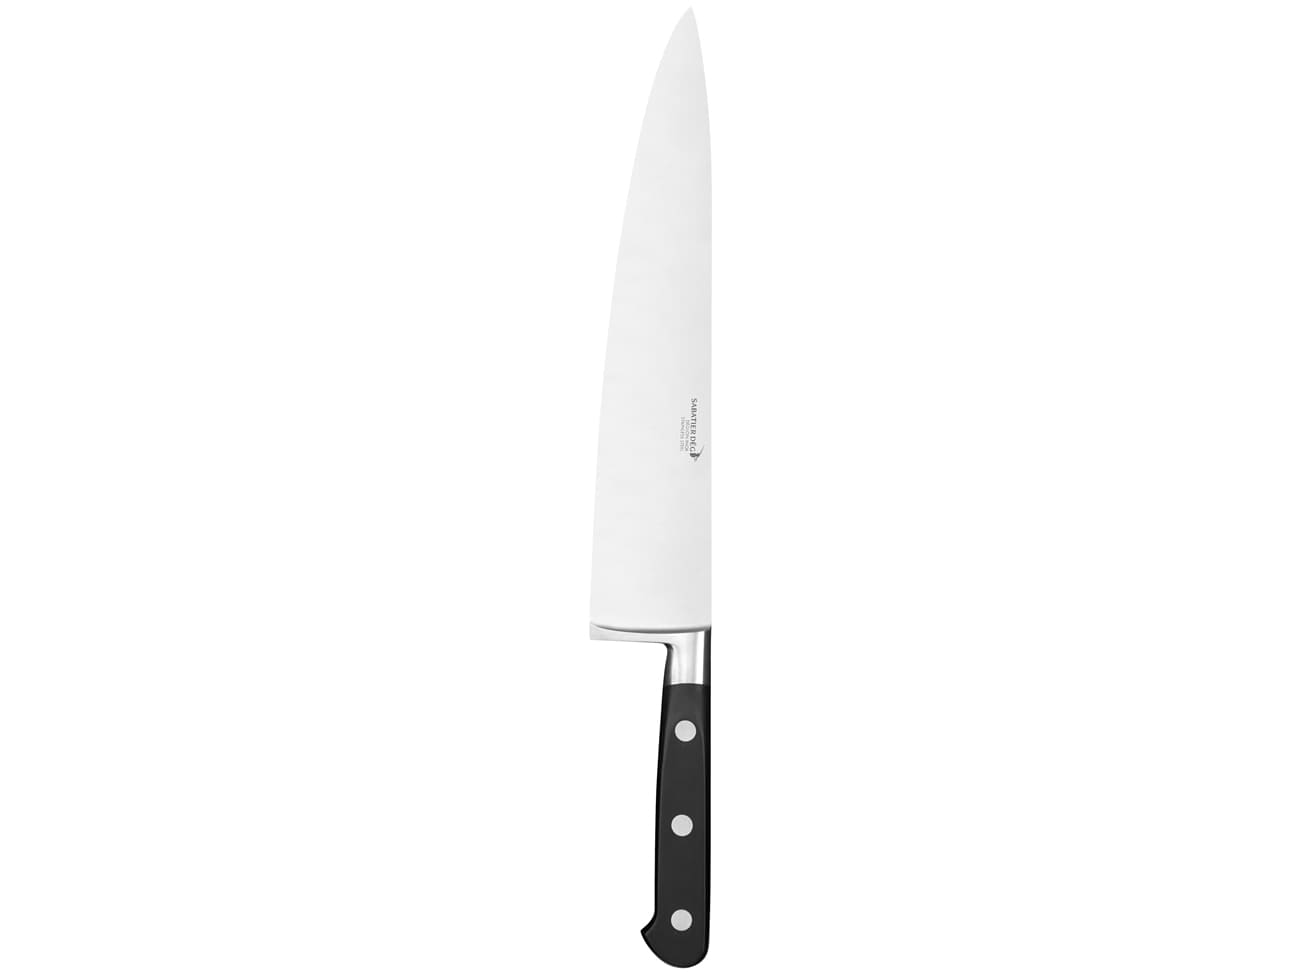 Couteau de chef forgée ou couteau de tour 25 cm Matfer. - Matfer